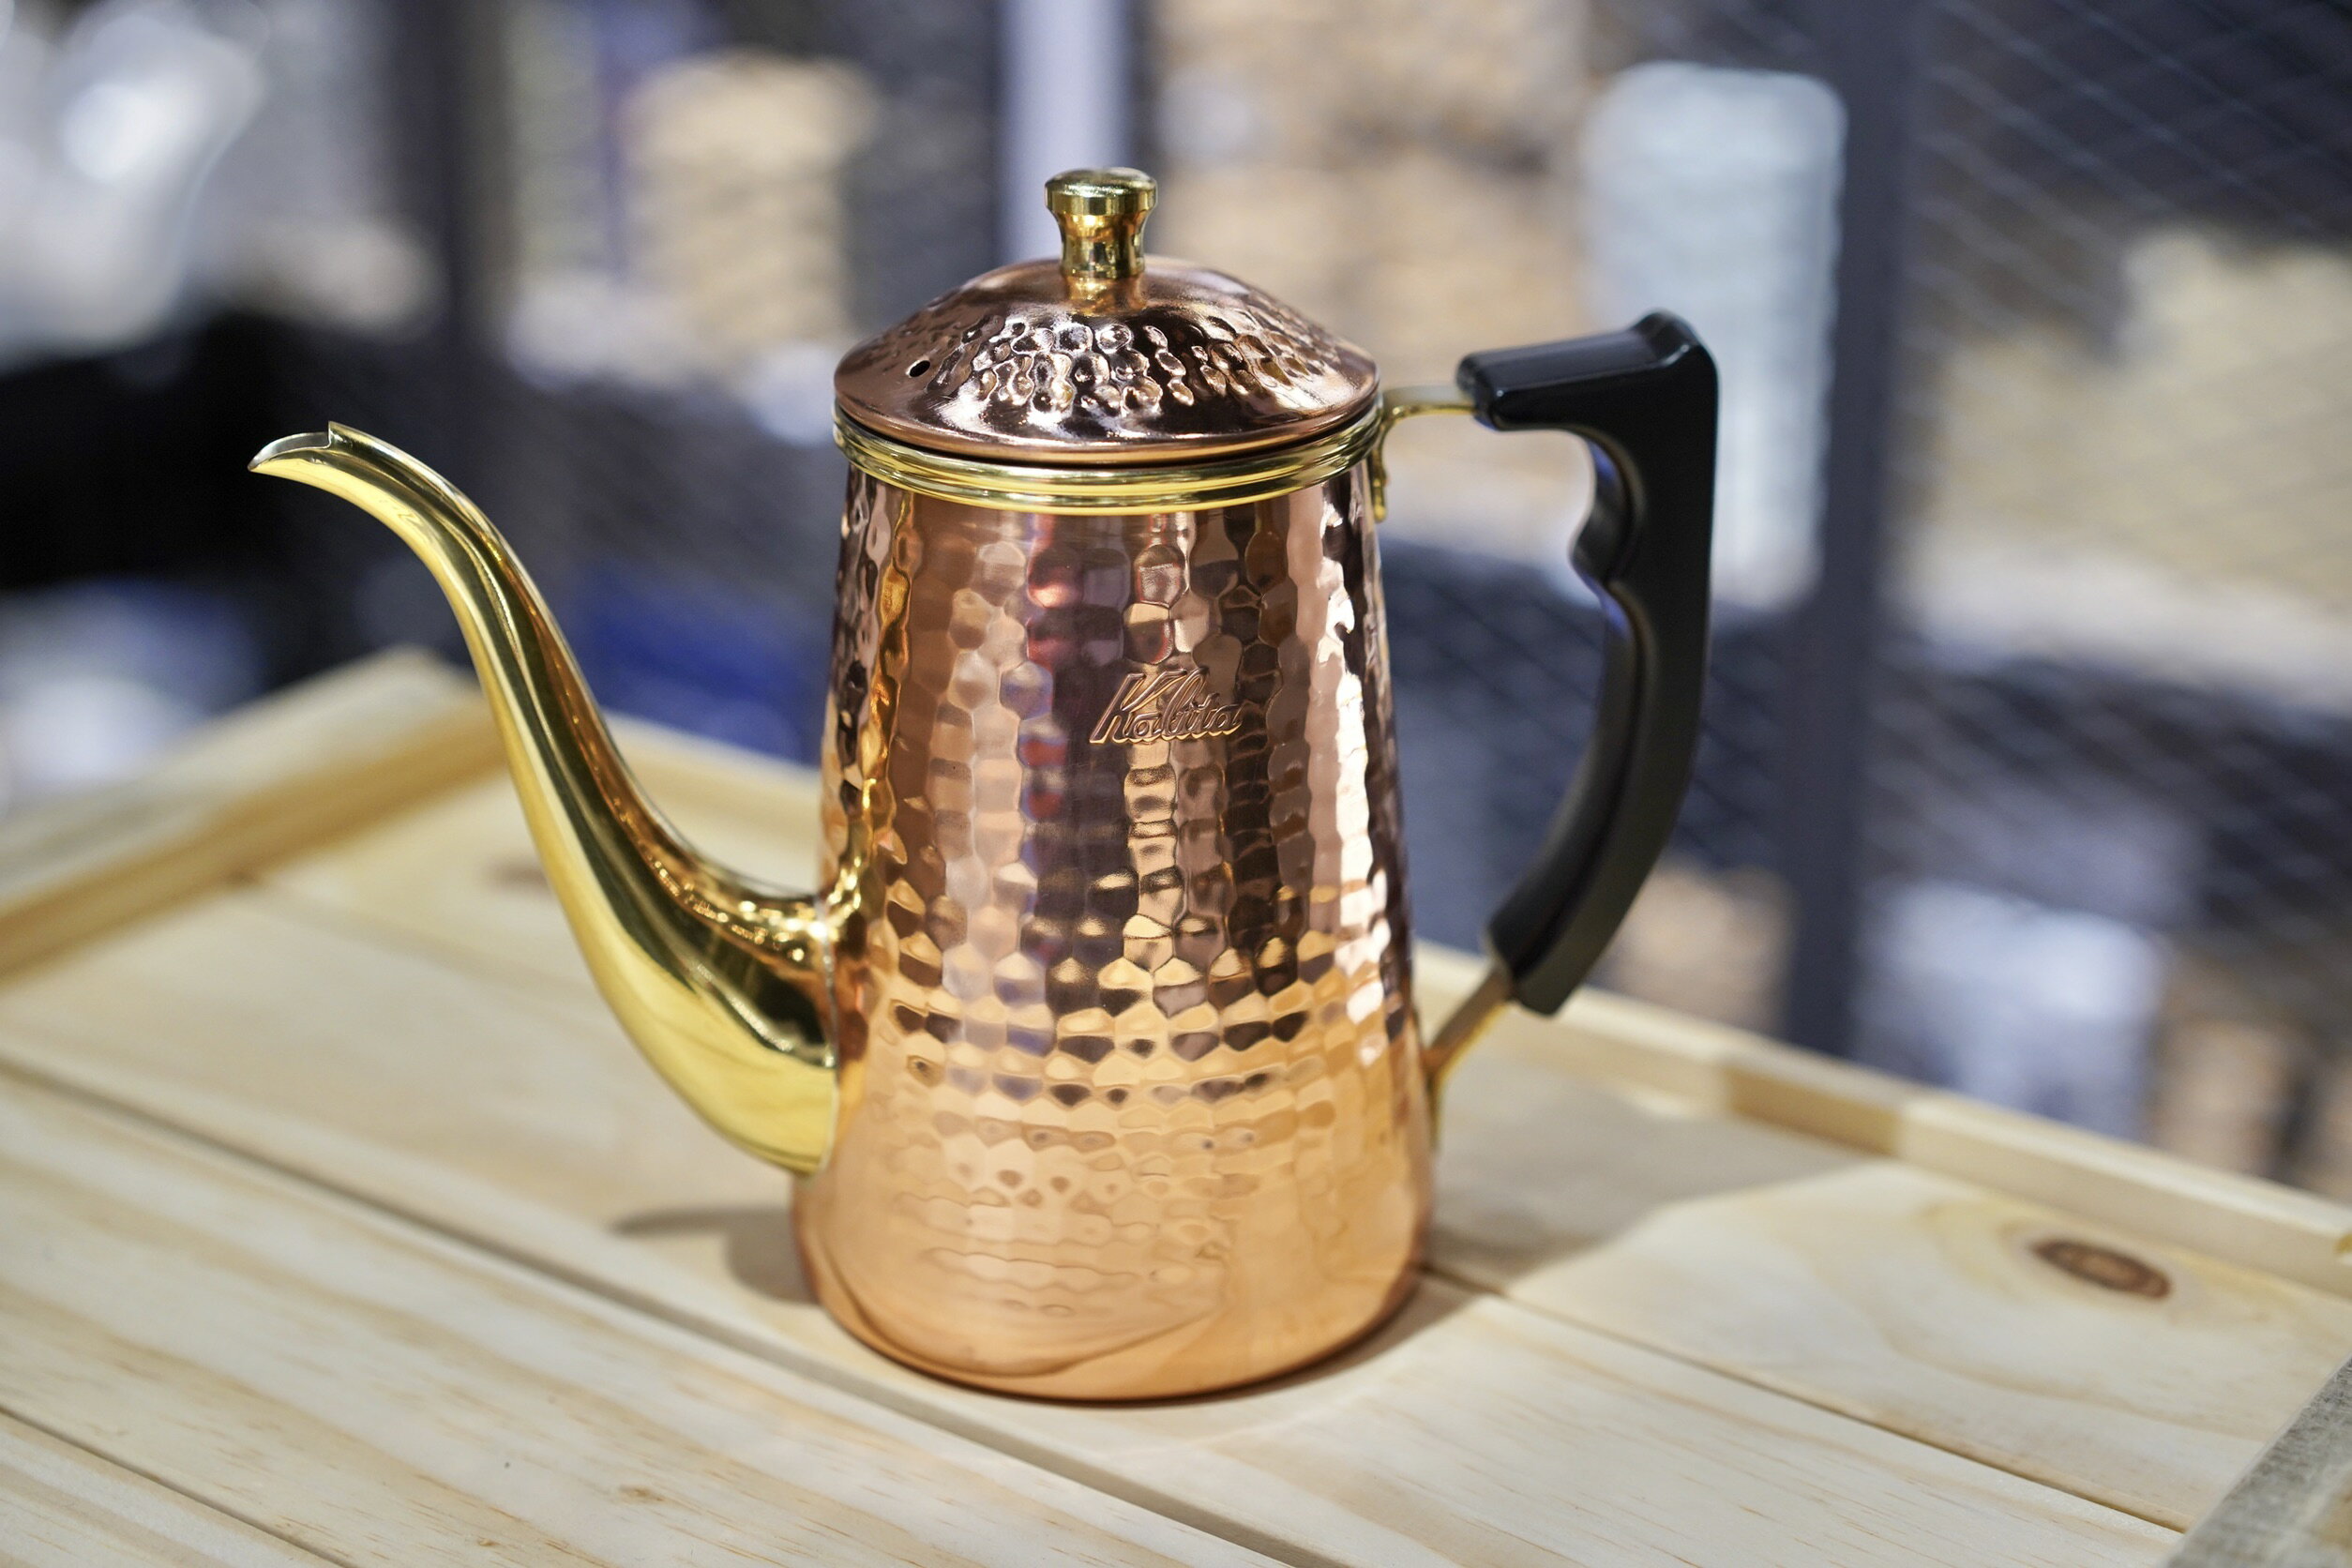 【沐湛咖啡】Kalita Copper POT 鶴嘴銅壺0.7mm厚銅 0.7L特製電木隔熱手把 加強鍍鎳 700ml